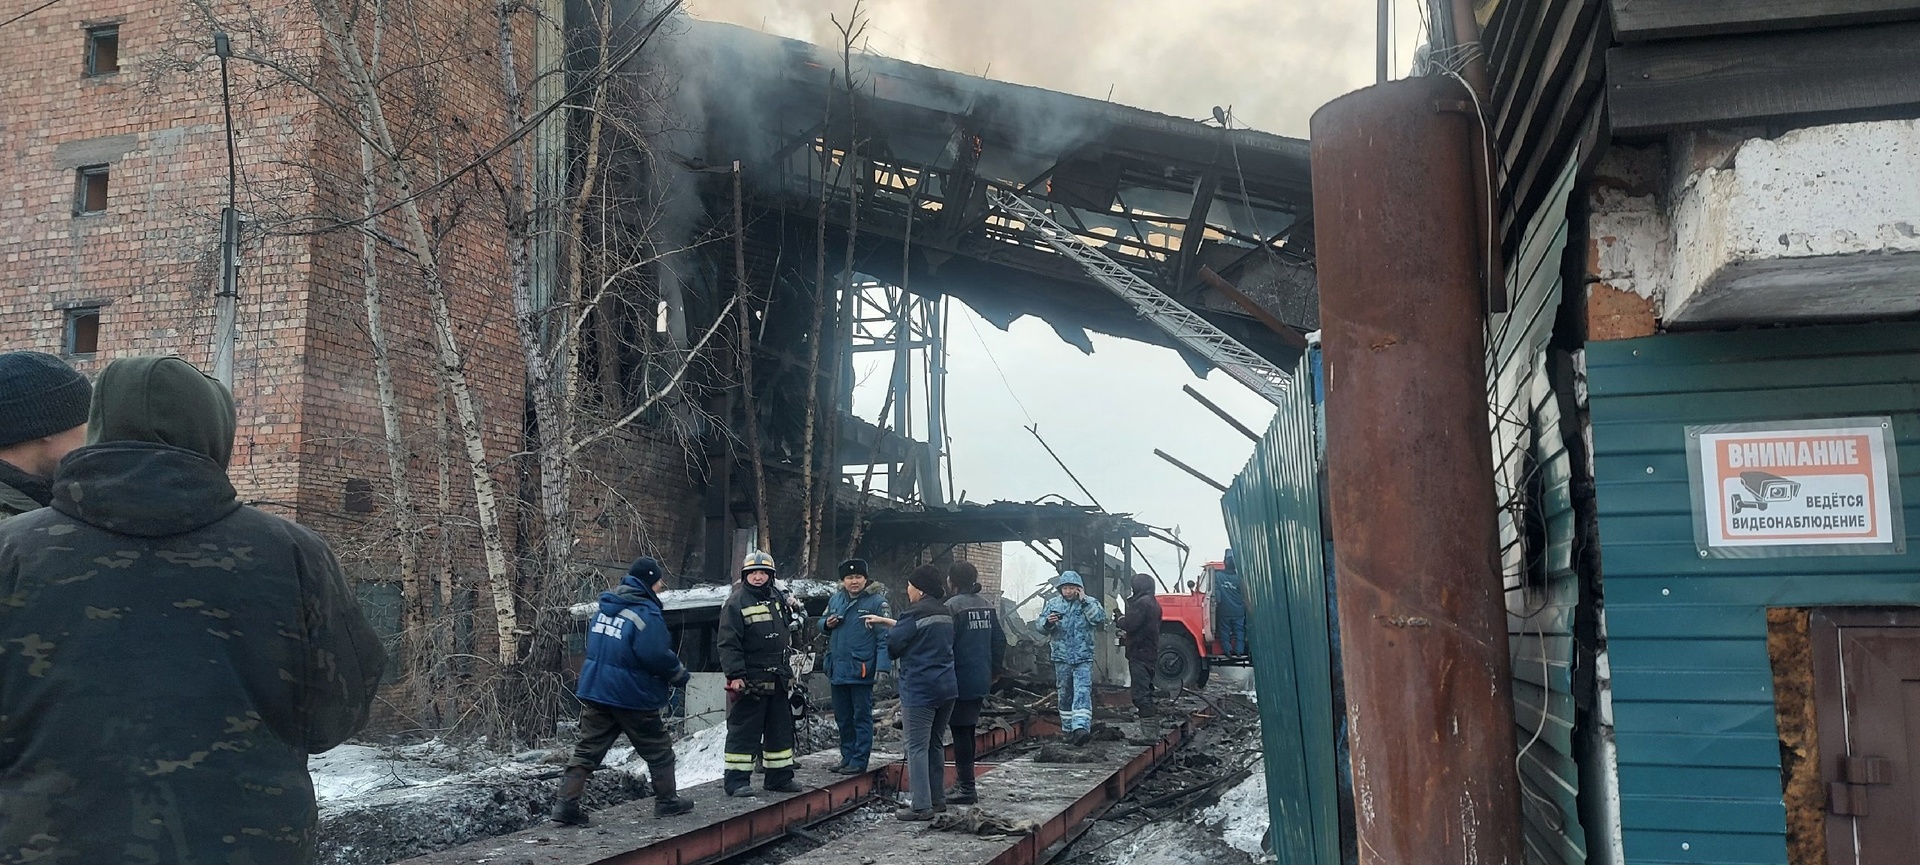 انفجار داخل محطة كهرباء تعمل بالفحم في روسيا